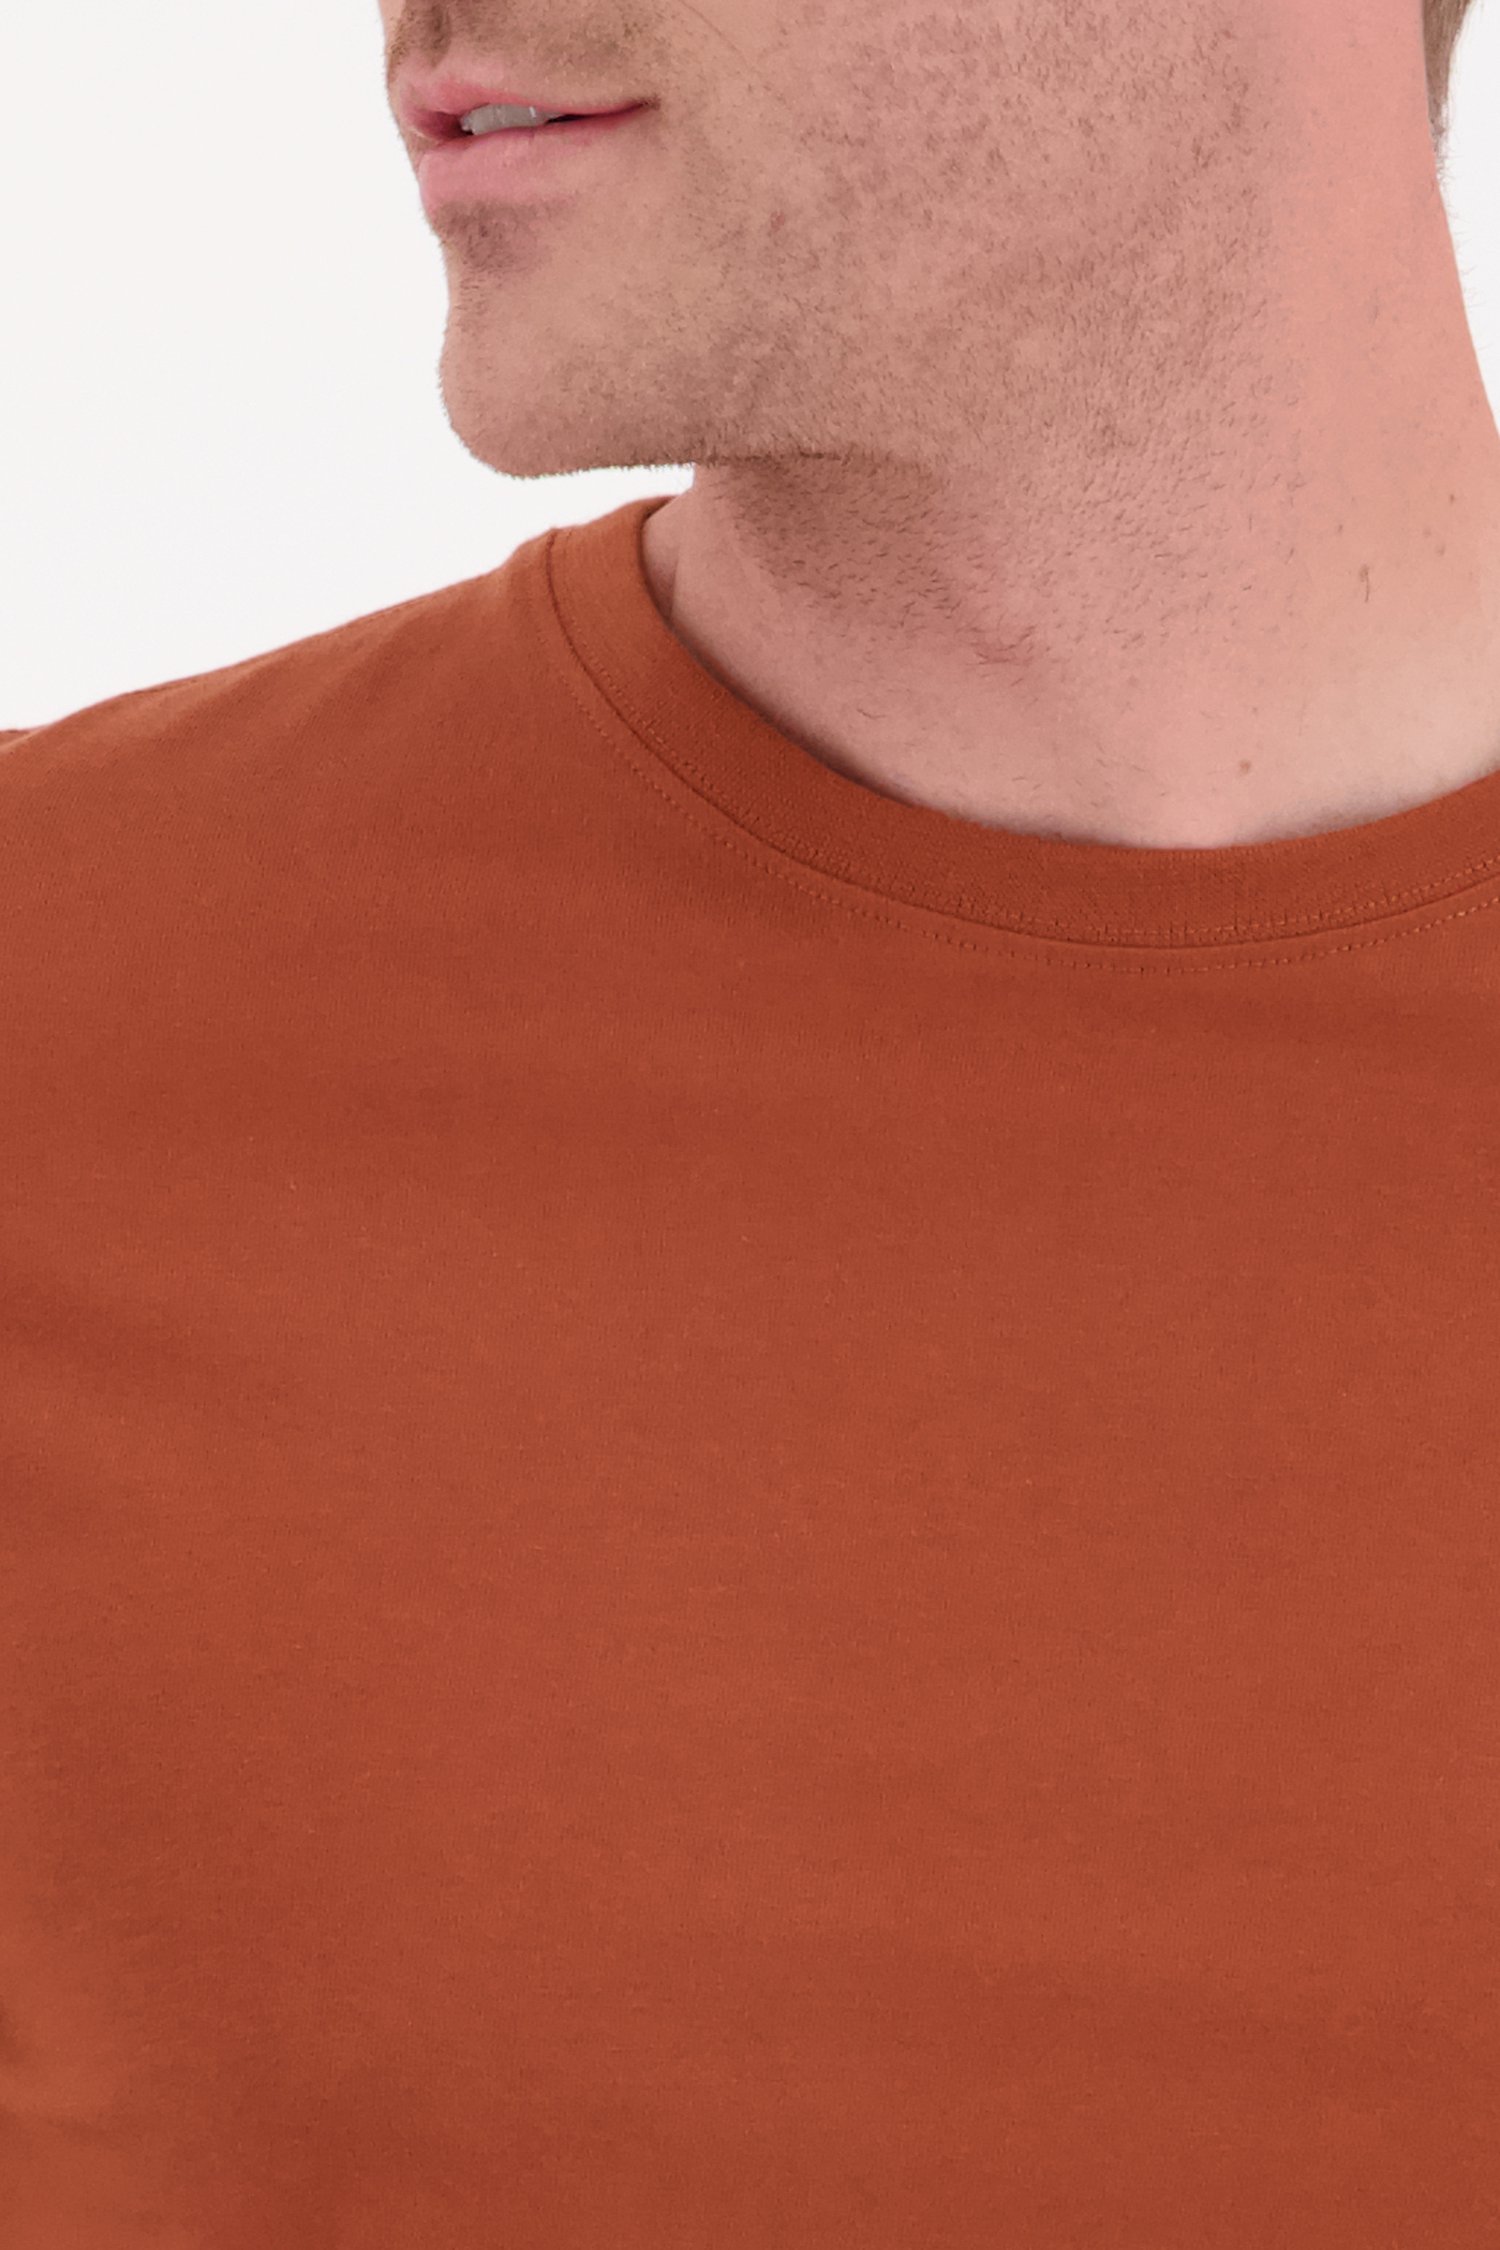 Oranjebruin T-shirt met lange mouwen van Ravøtt voor Heren